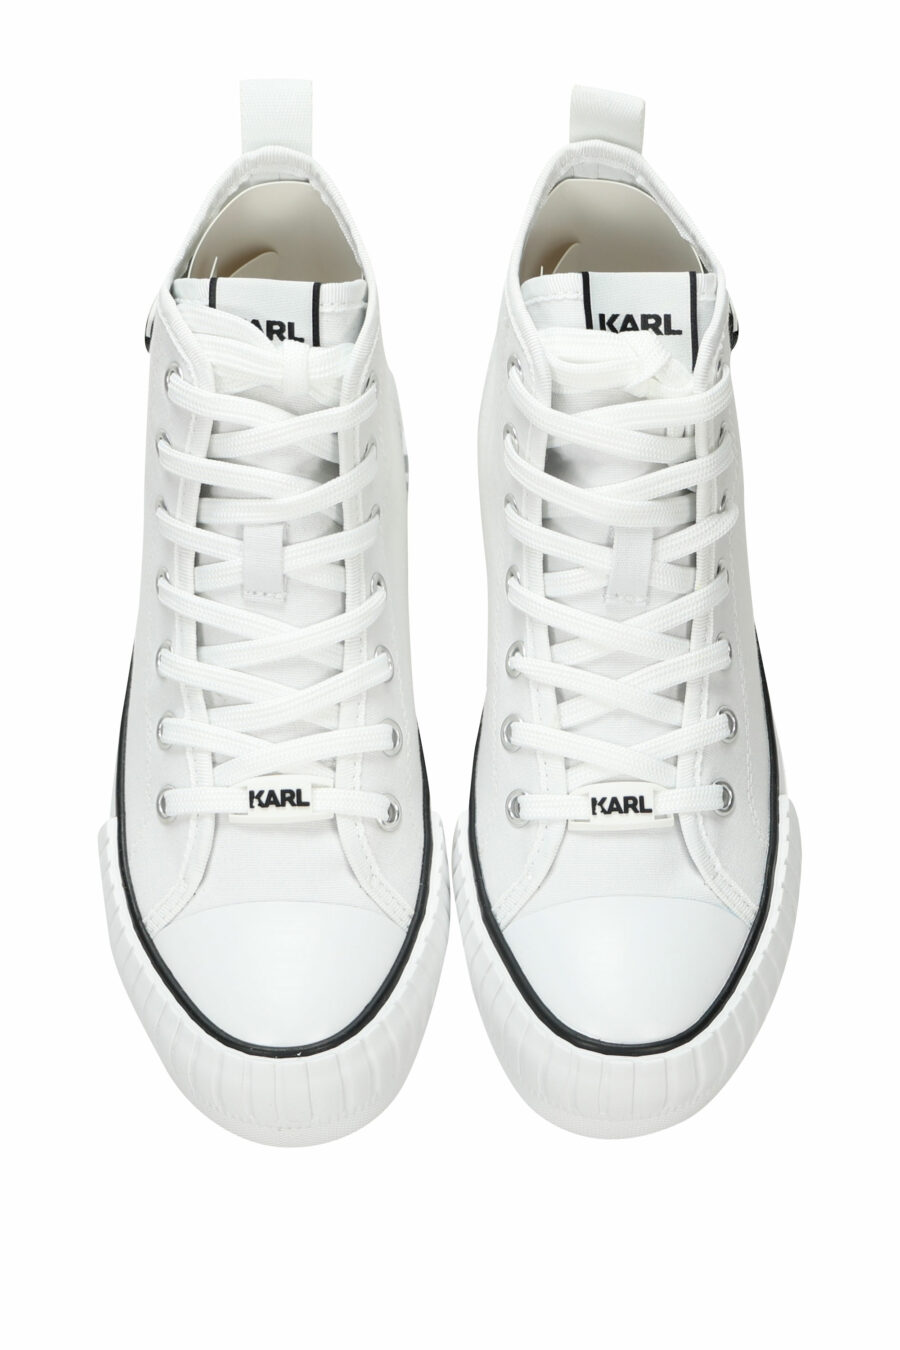 Zapatillas blancas altas estilo "converse" con minilogo de goma "karl" - 5059529384837 4